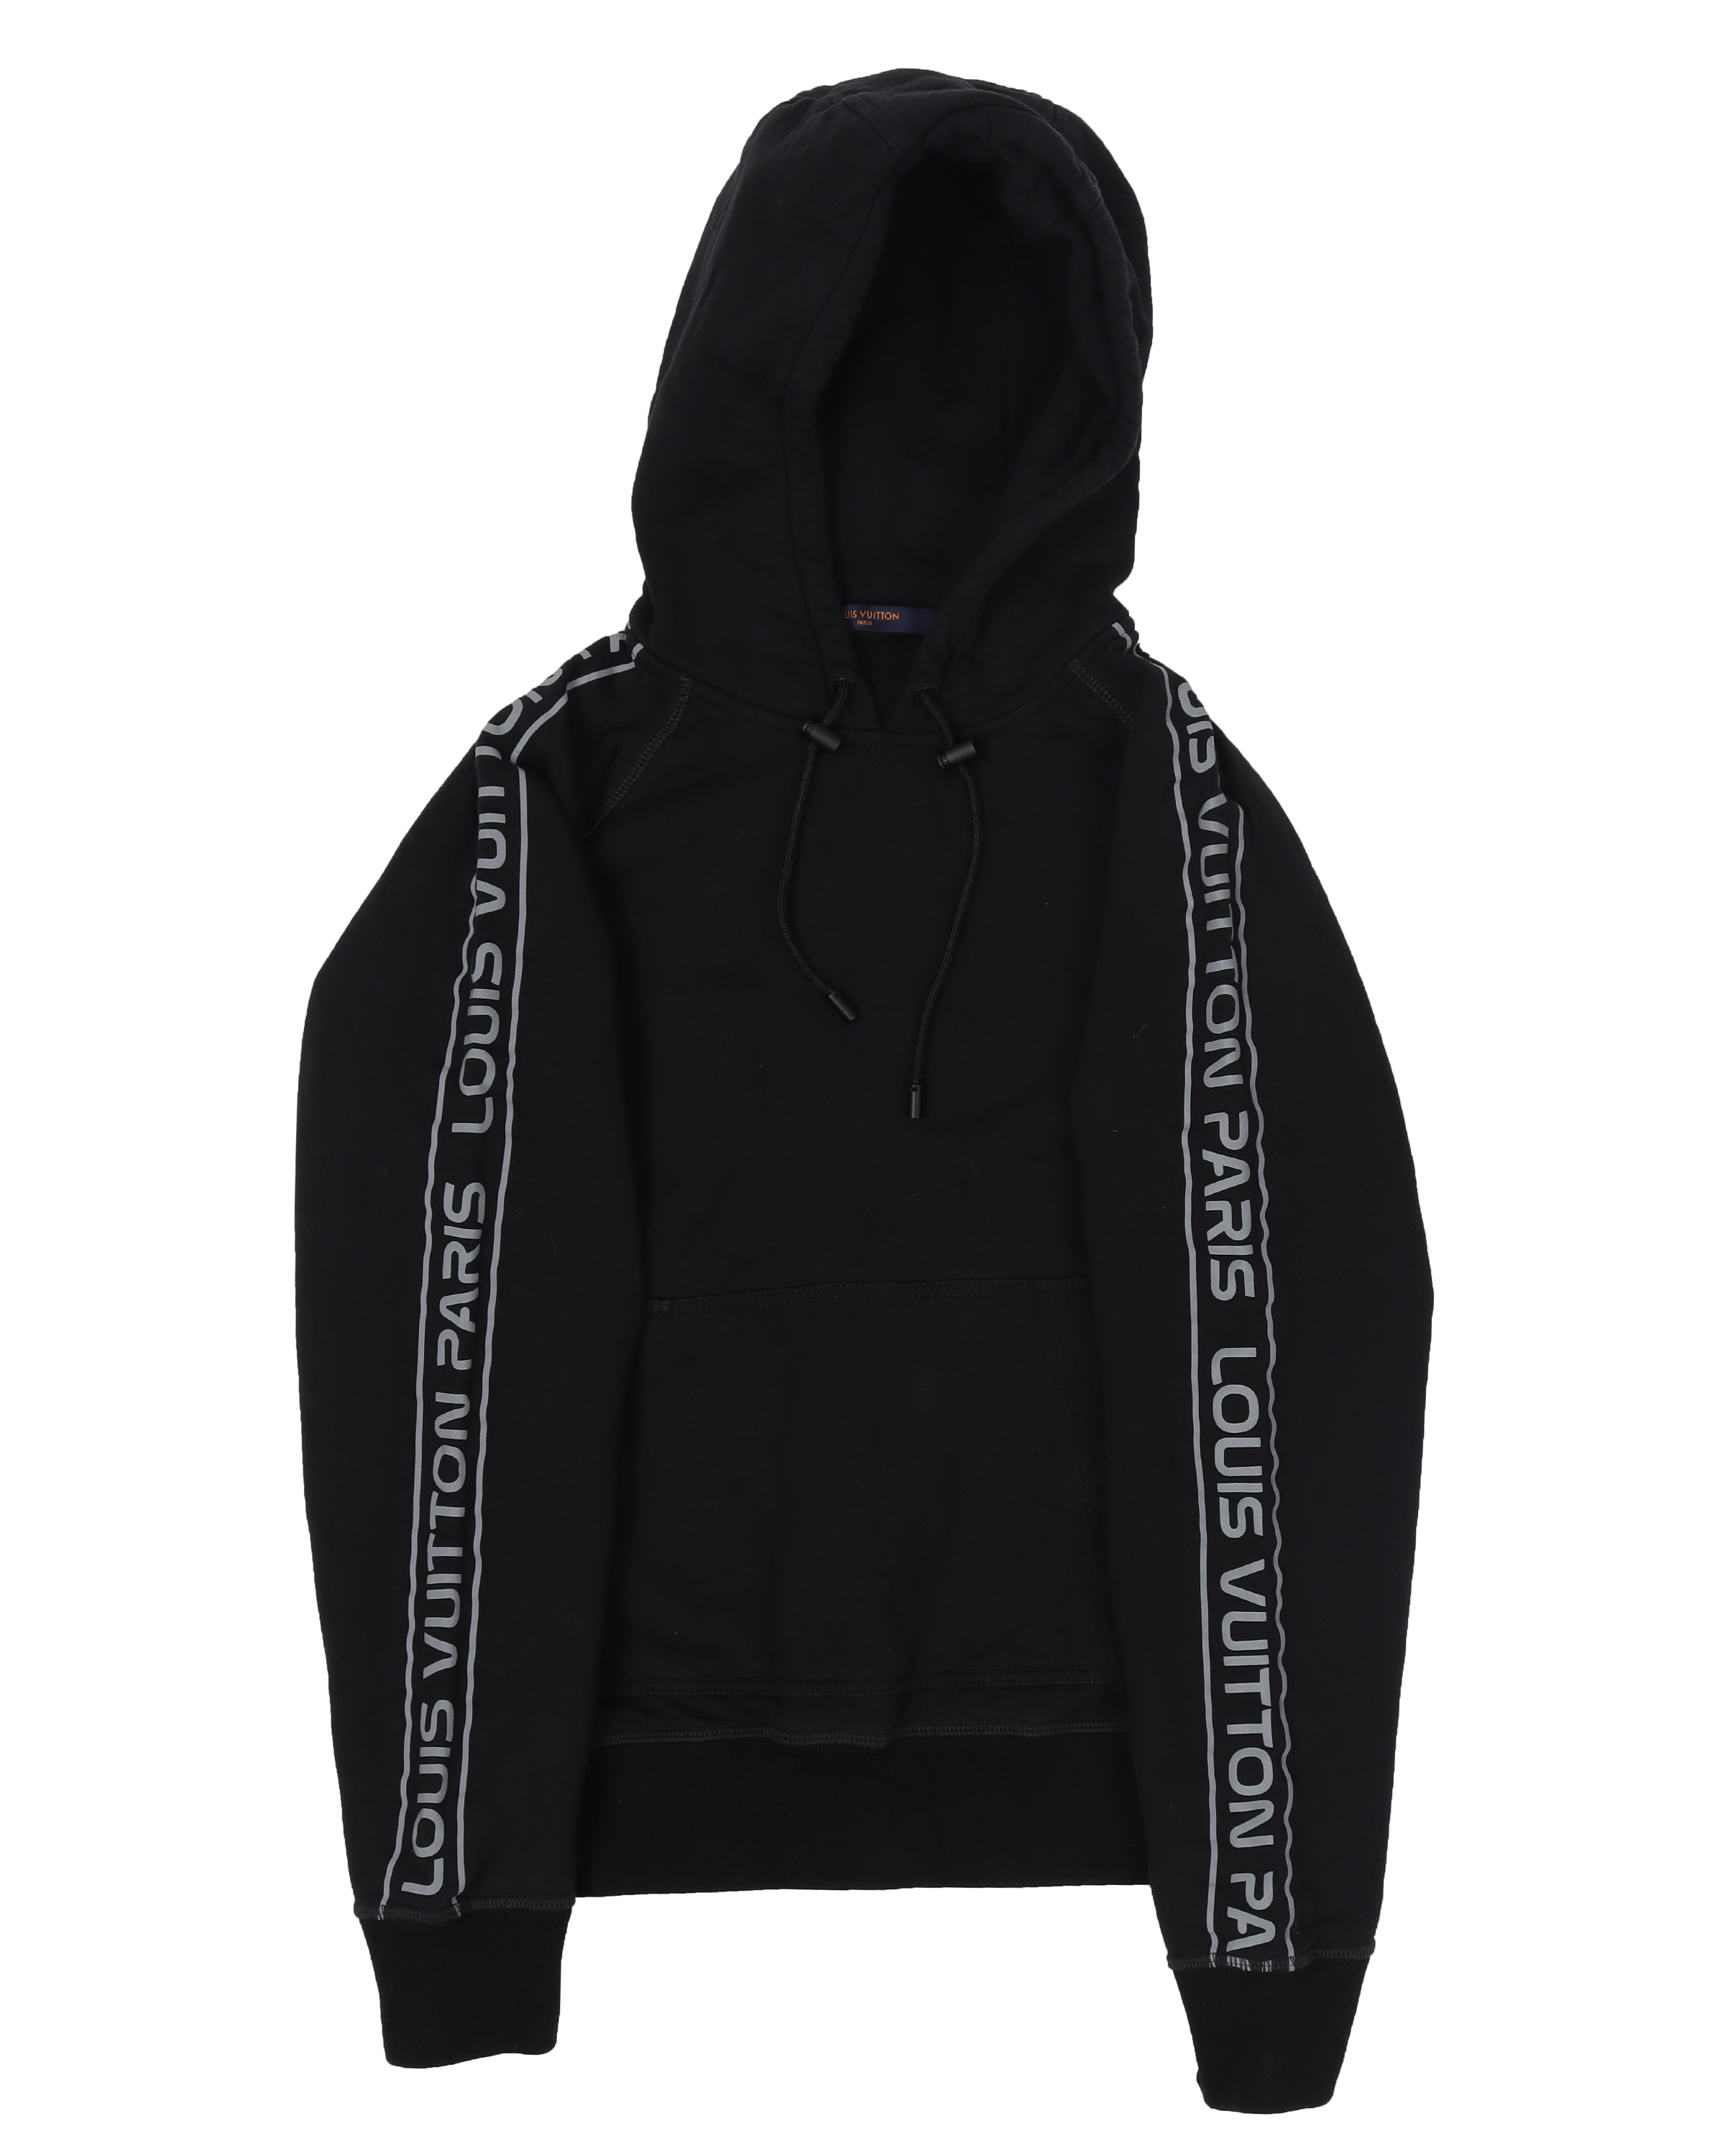 reflective sleeves gravity hoodie